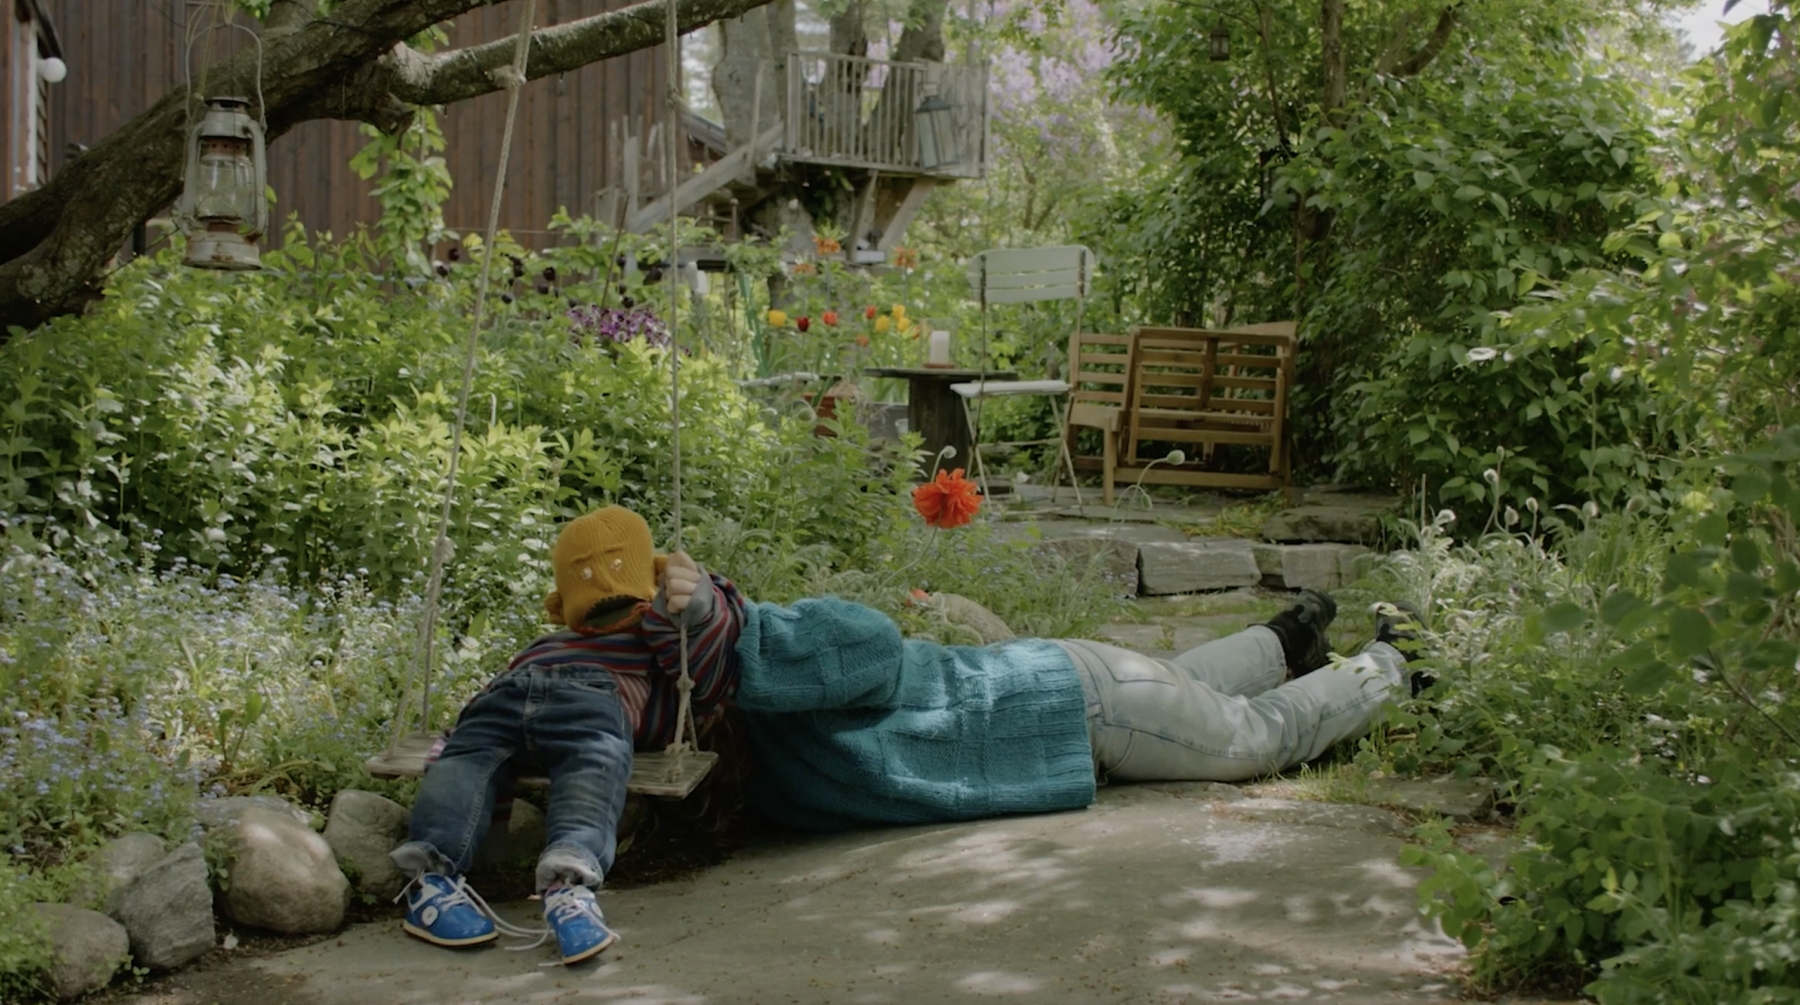 Barn og voksen ligger på bakken i en hage. Foto.